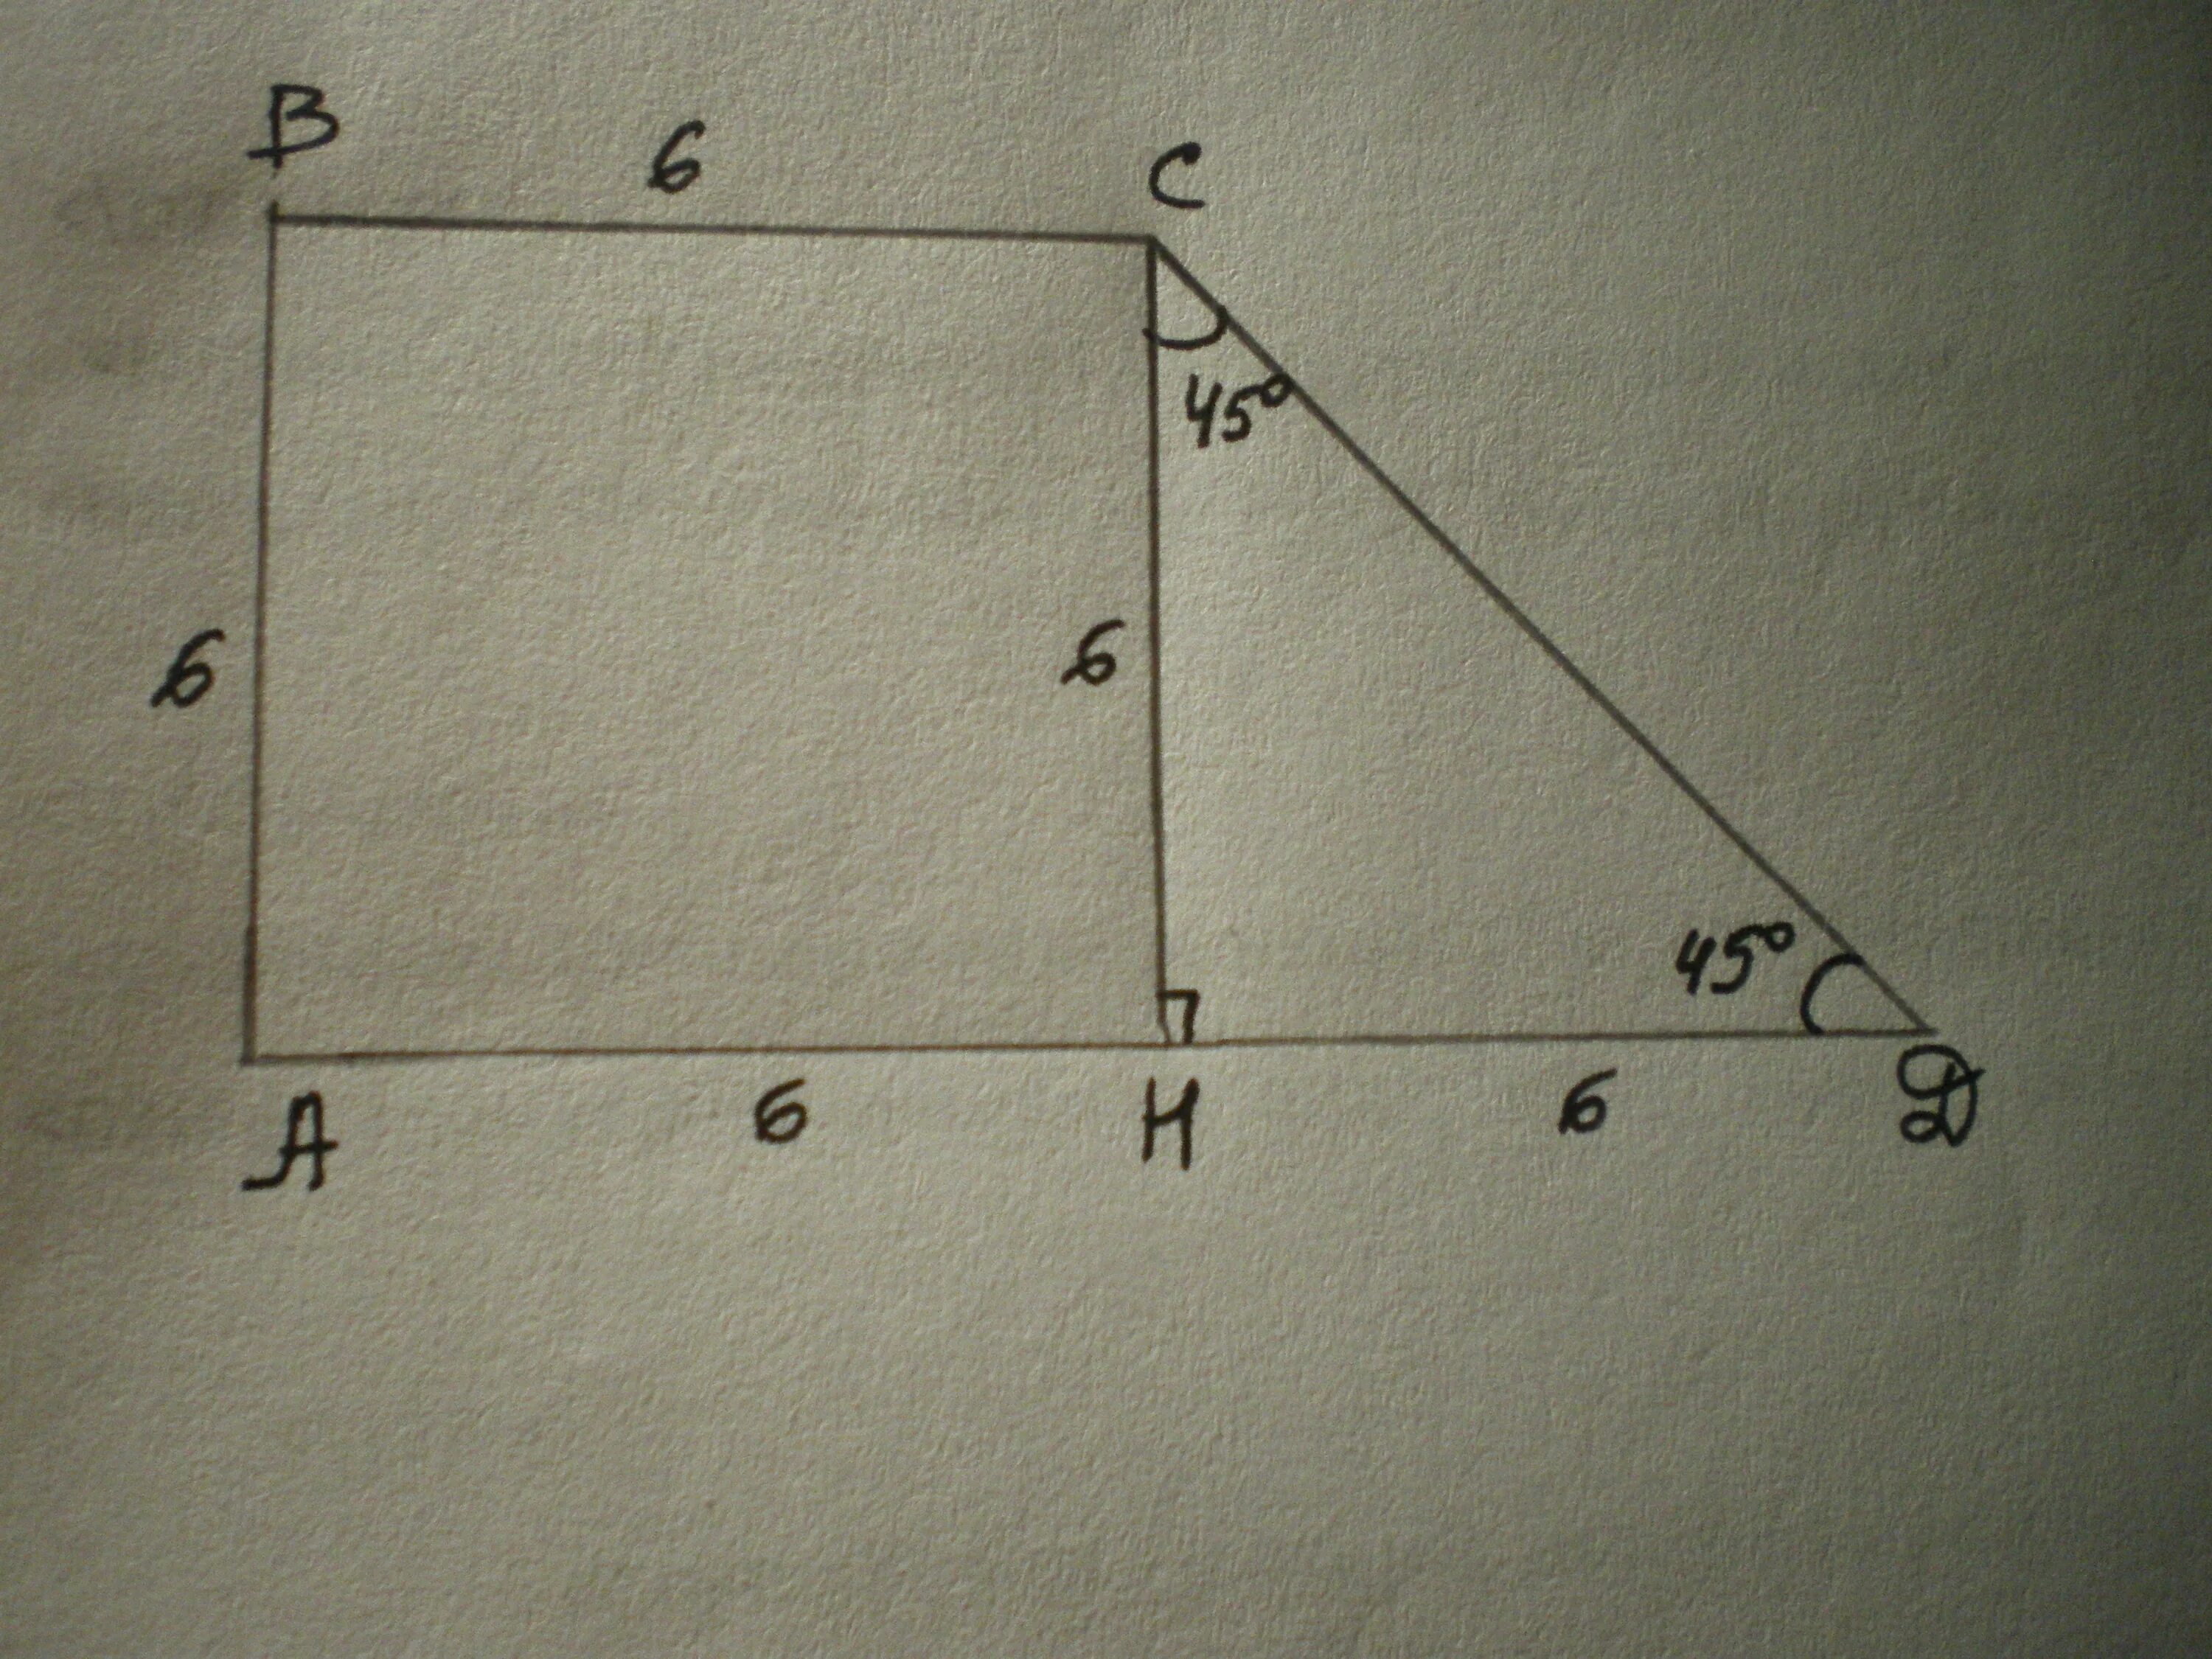 Меньшие стороны прямоугольной трапеции. АВСД прямоугольная трапеция угол в 135. Две меньшие стороны прямоугольной трапеции равны. АВСД трапеция прямоугольная угол 135 градусов.